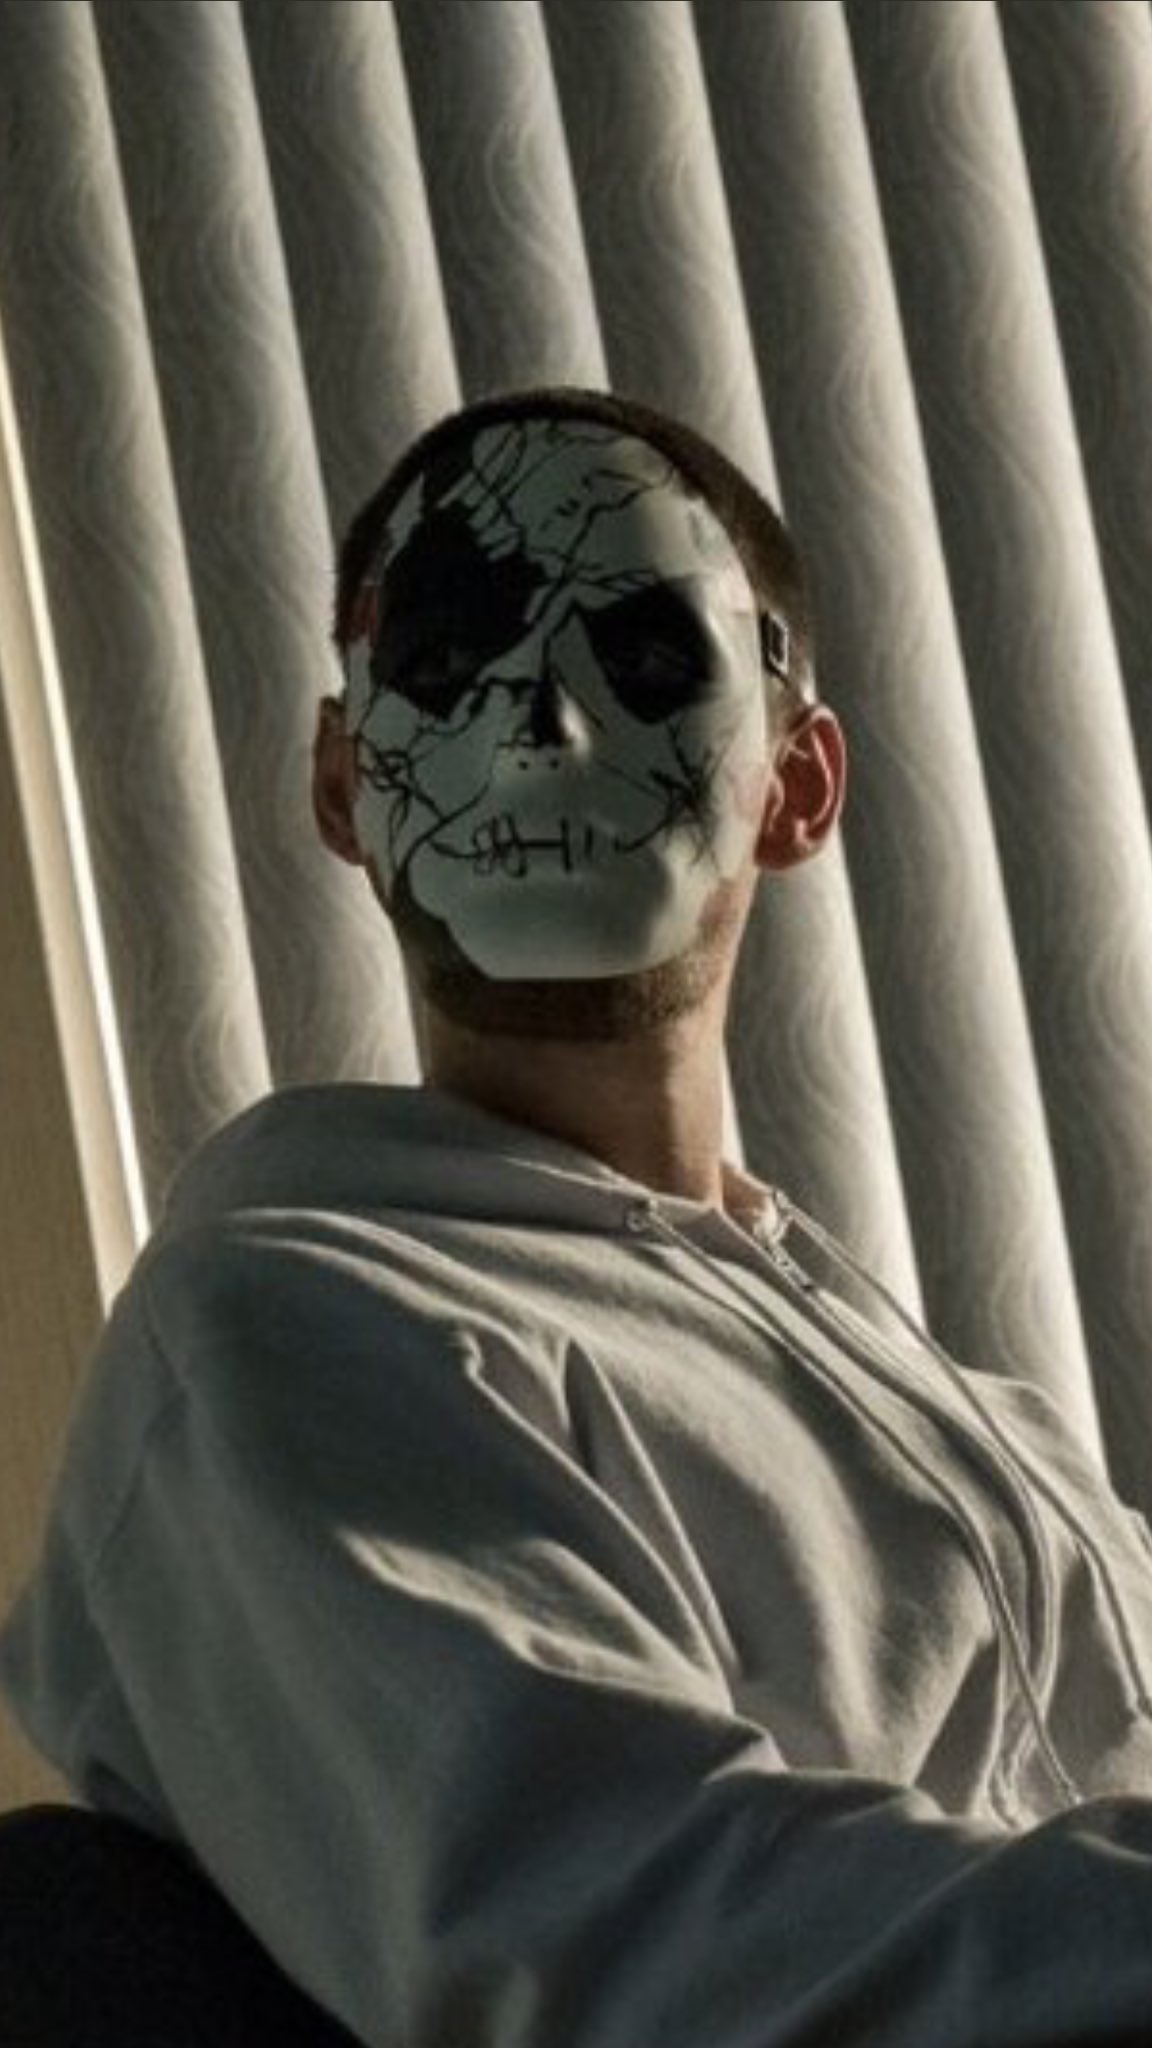 Fuente Abuelos visitantes antena MarvelFlix ar Twitter: "Billy Russo, llevara máscara para interpretar a  Jigsaw. Soy el único al que no le gusta esto? https://t.co/tLTsL9OEfa" /  Twitter